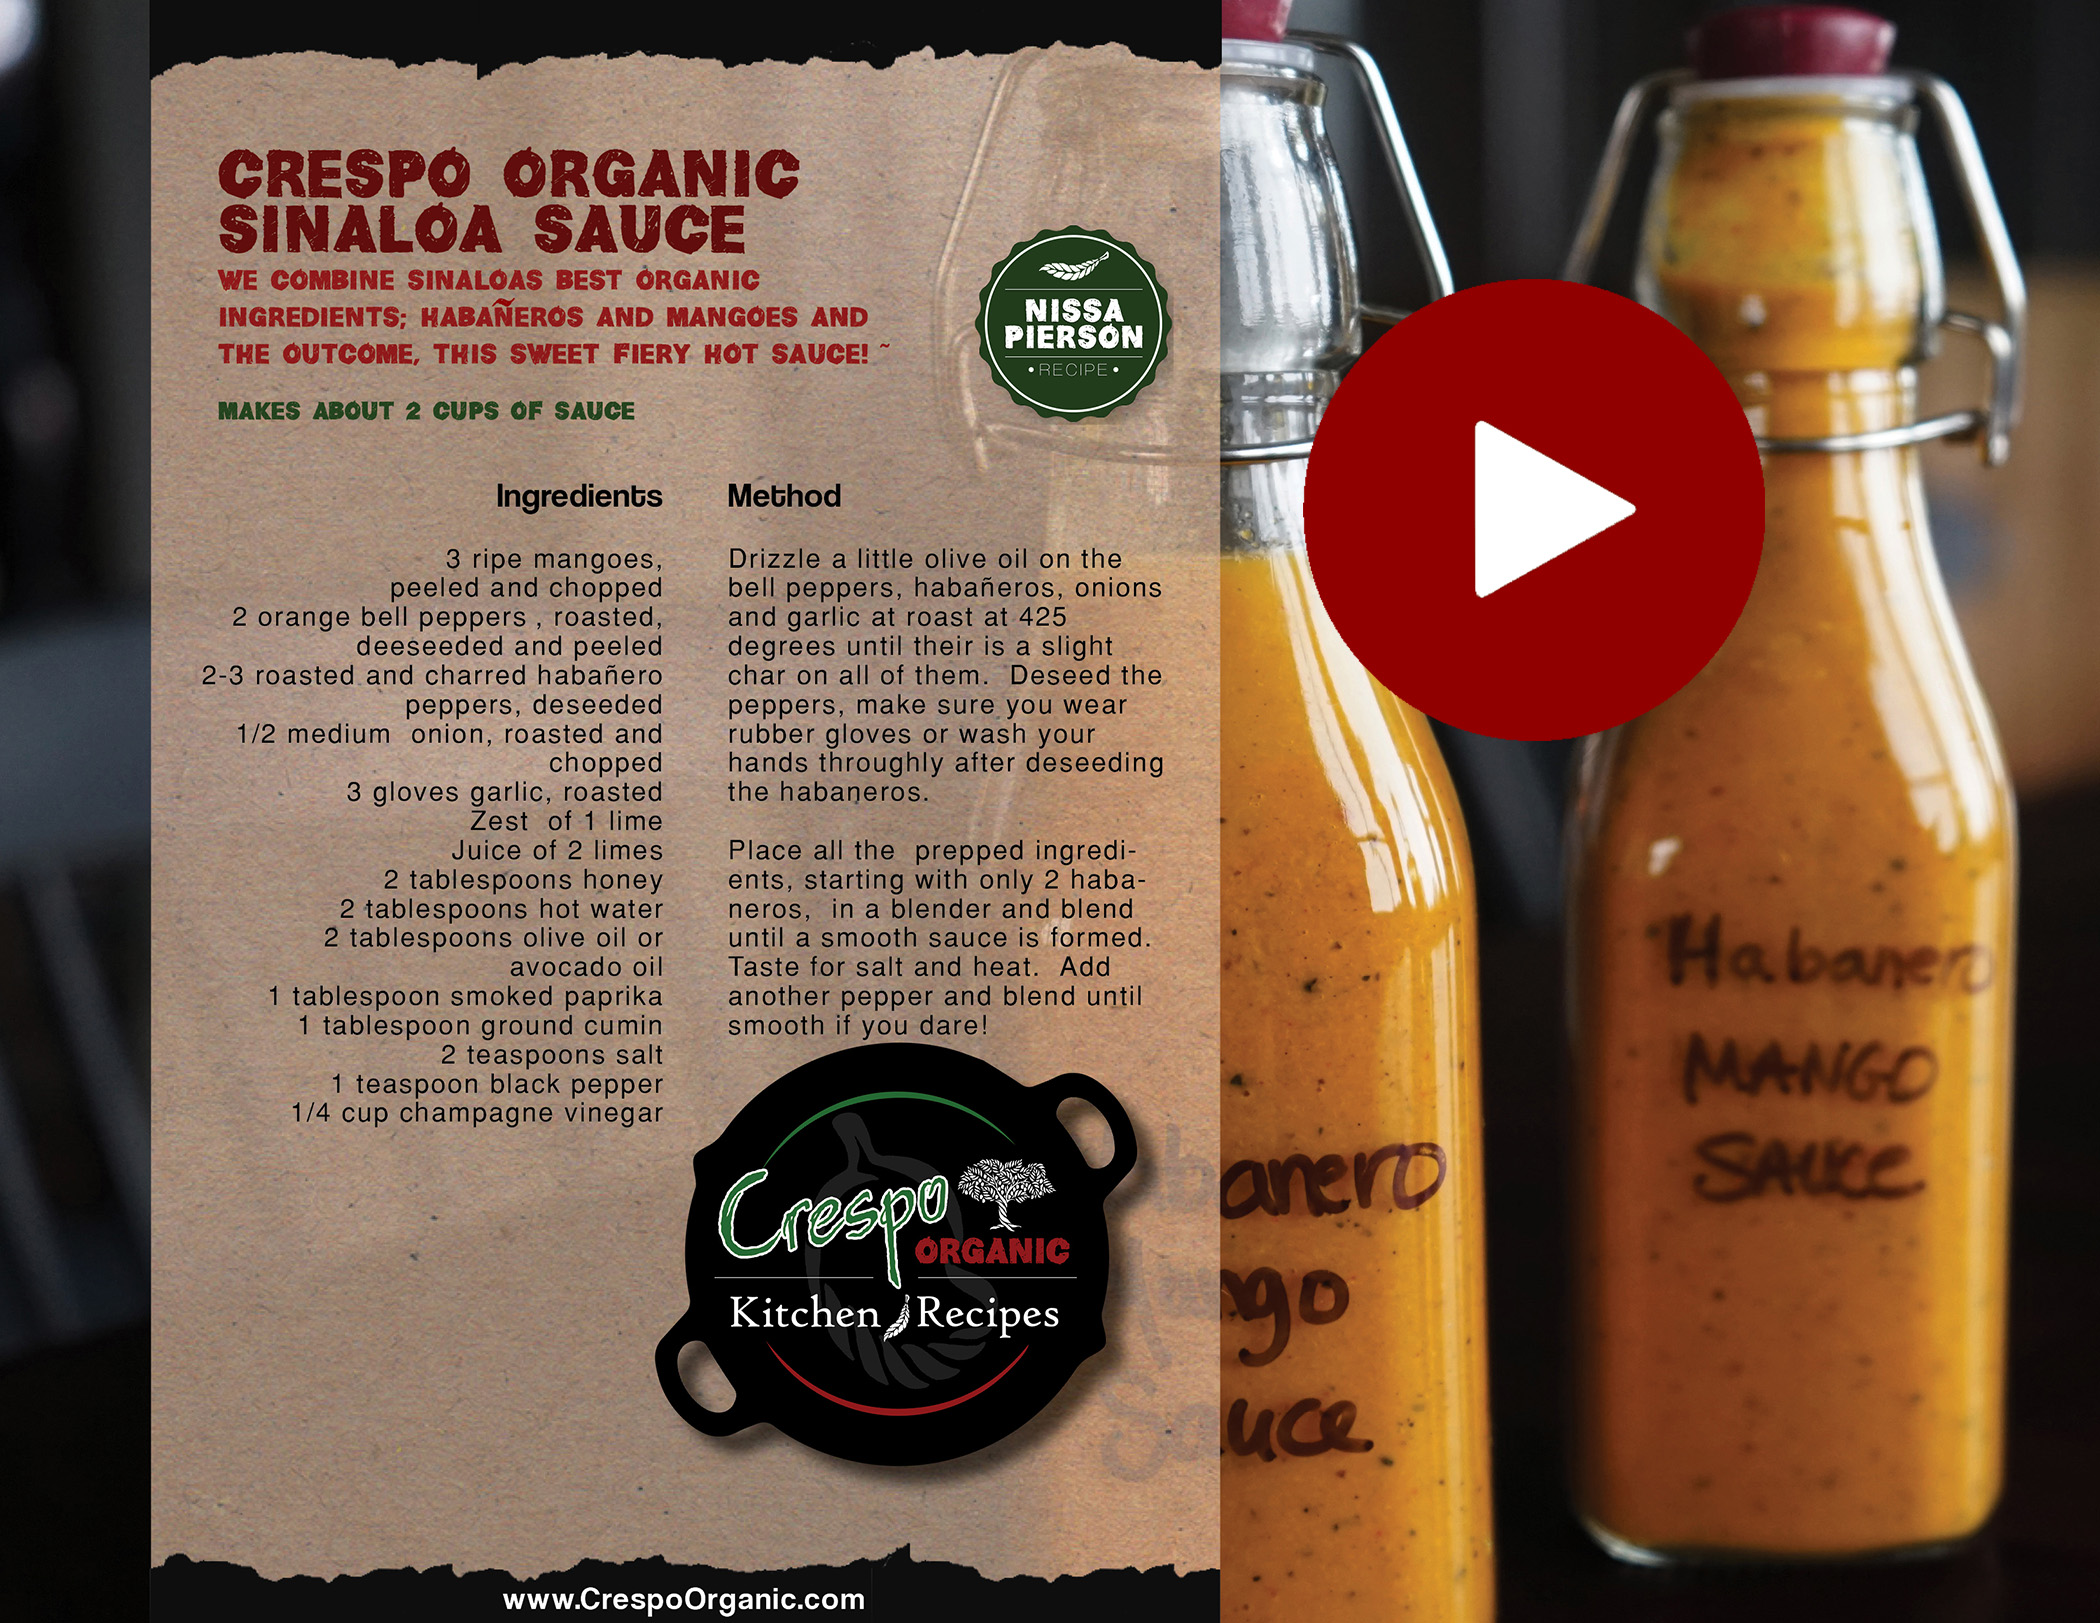 Crespo Organic Sinaloa Sauce copy